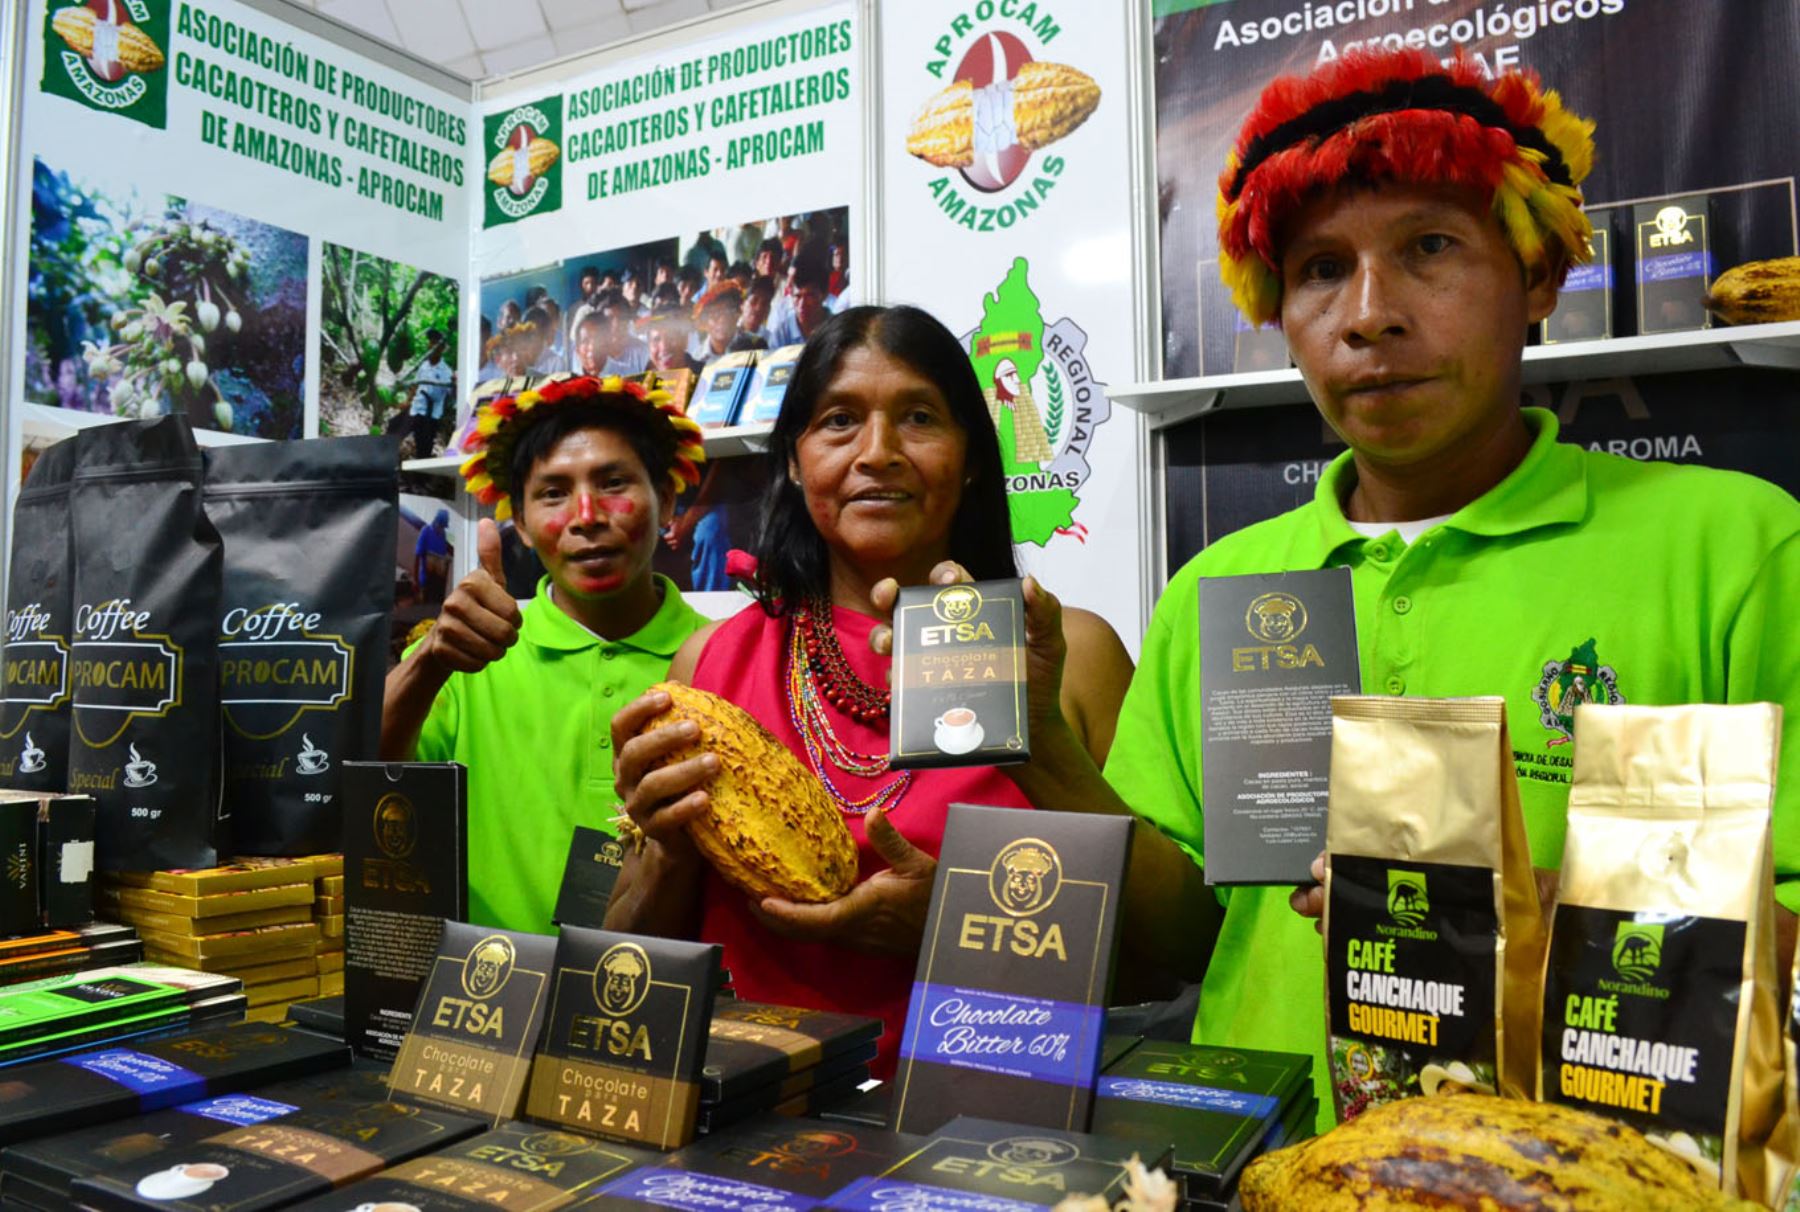 Perú es el segundo exportador de cacao orgánico en el mundo, el octavo productor mundial de cacao en grano y el tercer productor de cacao en grano de América Latina.